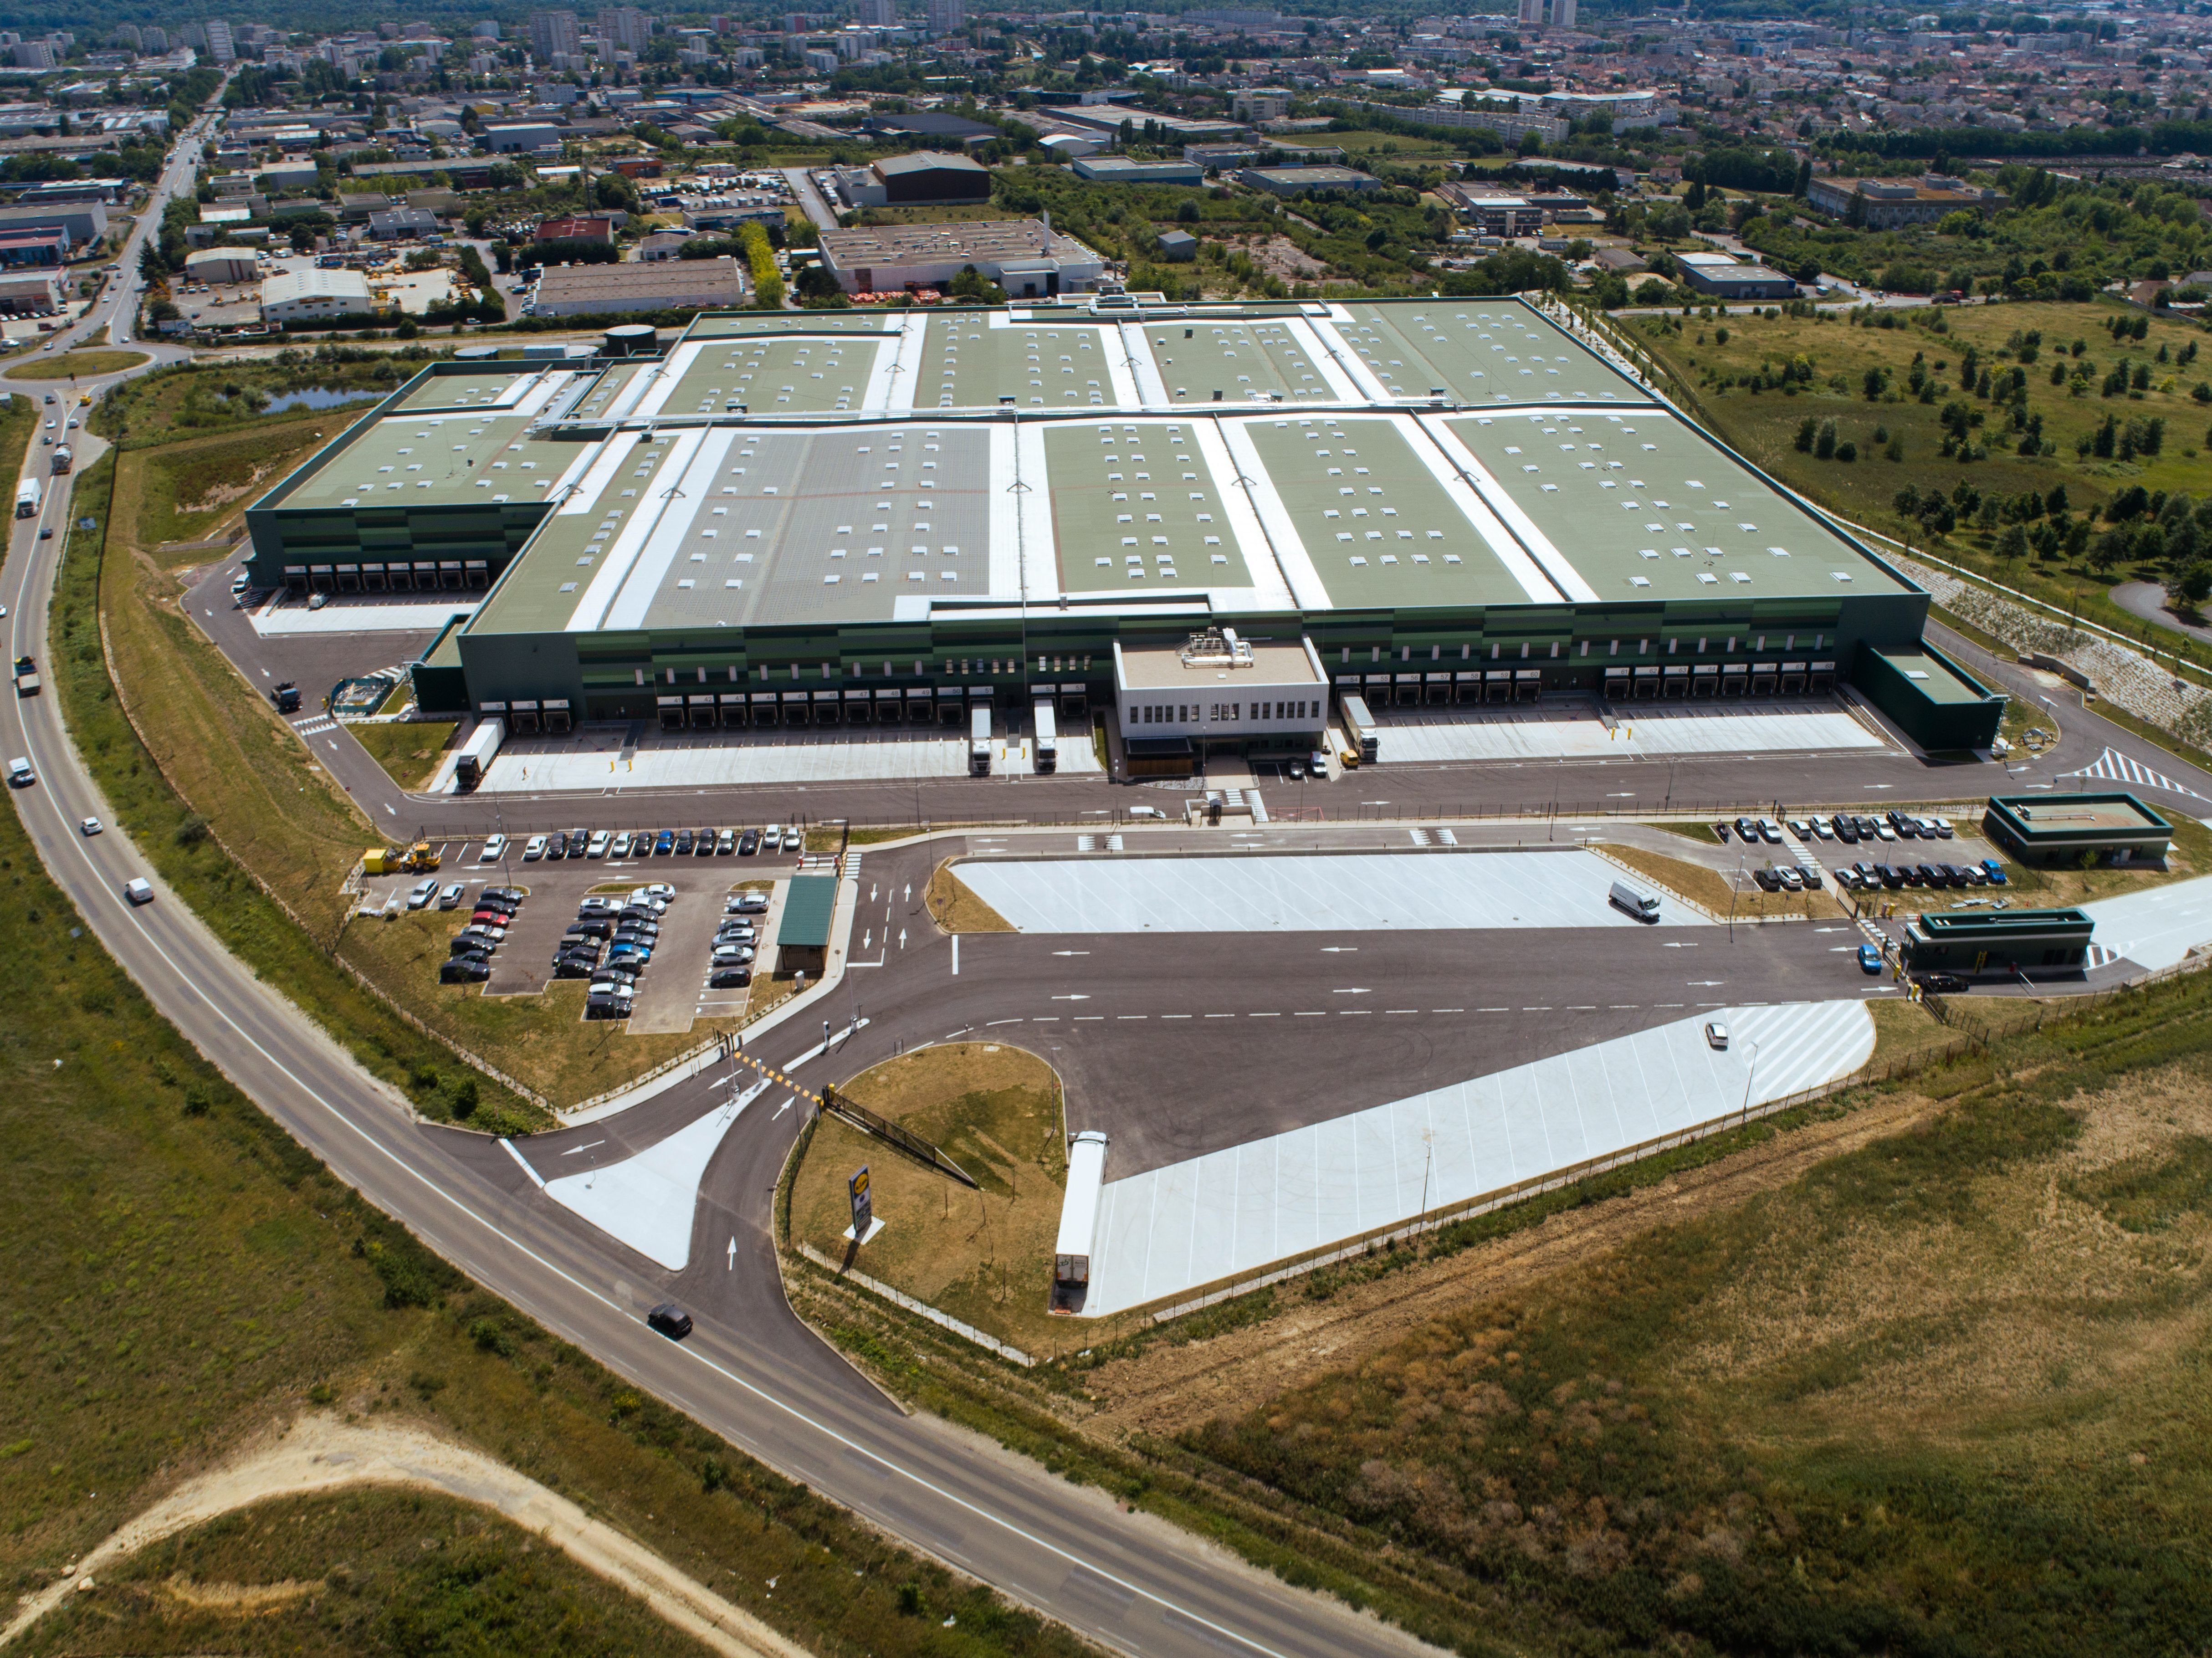 L'enseigne Lidl a fait construire une plateforme logistique de 55.000 m2 qui alimente plus de soixante grandes surfaces de son groupe. C'est le plus gros entrepôt du groupe allemand en Île-de-France. Lidl